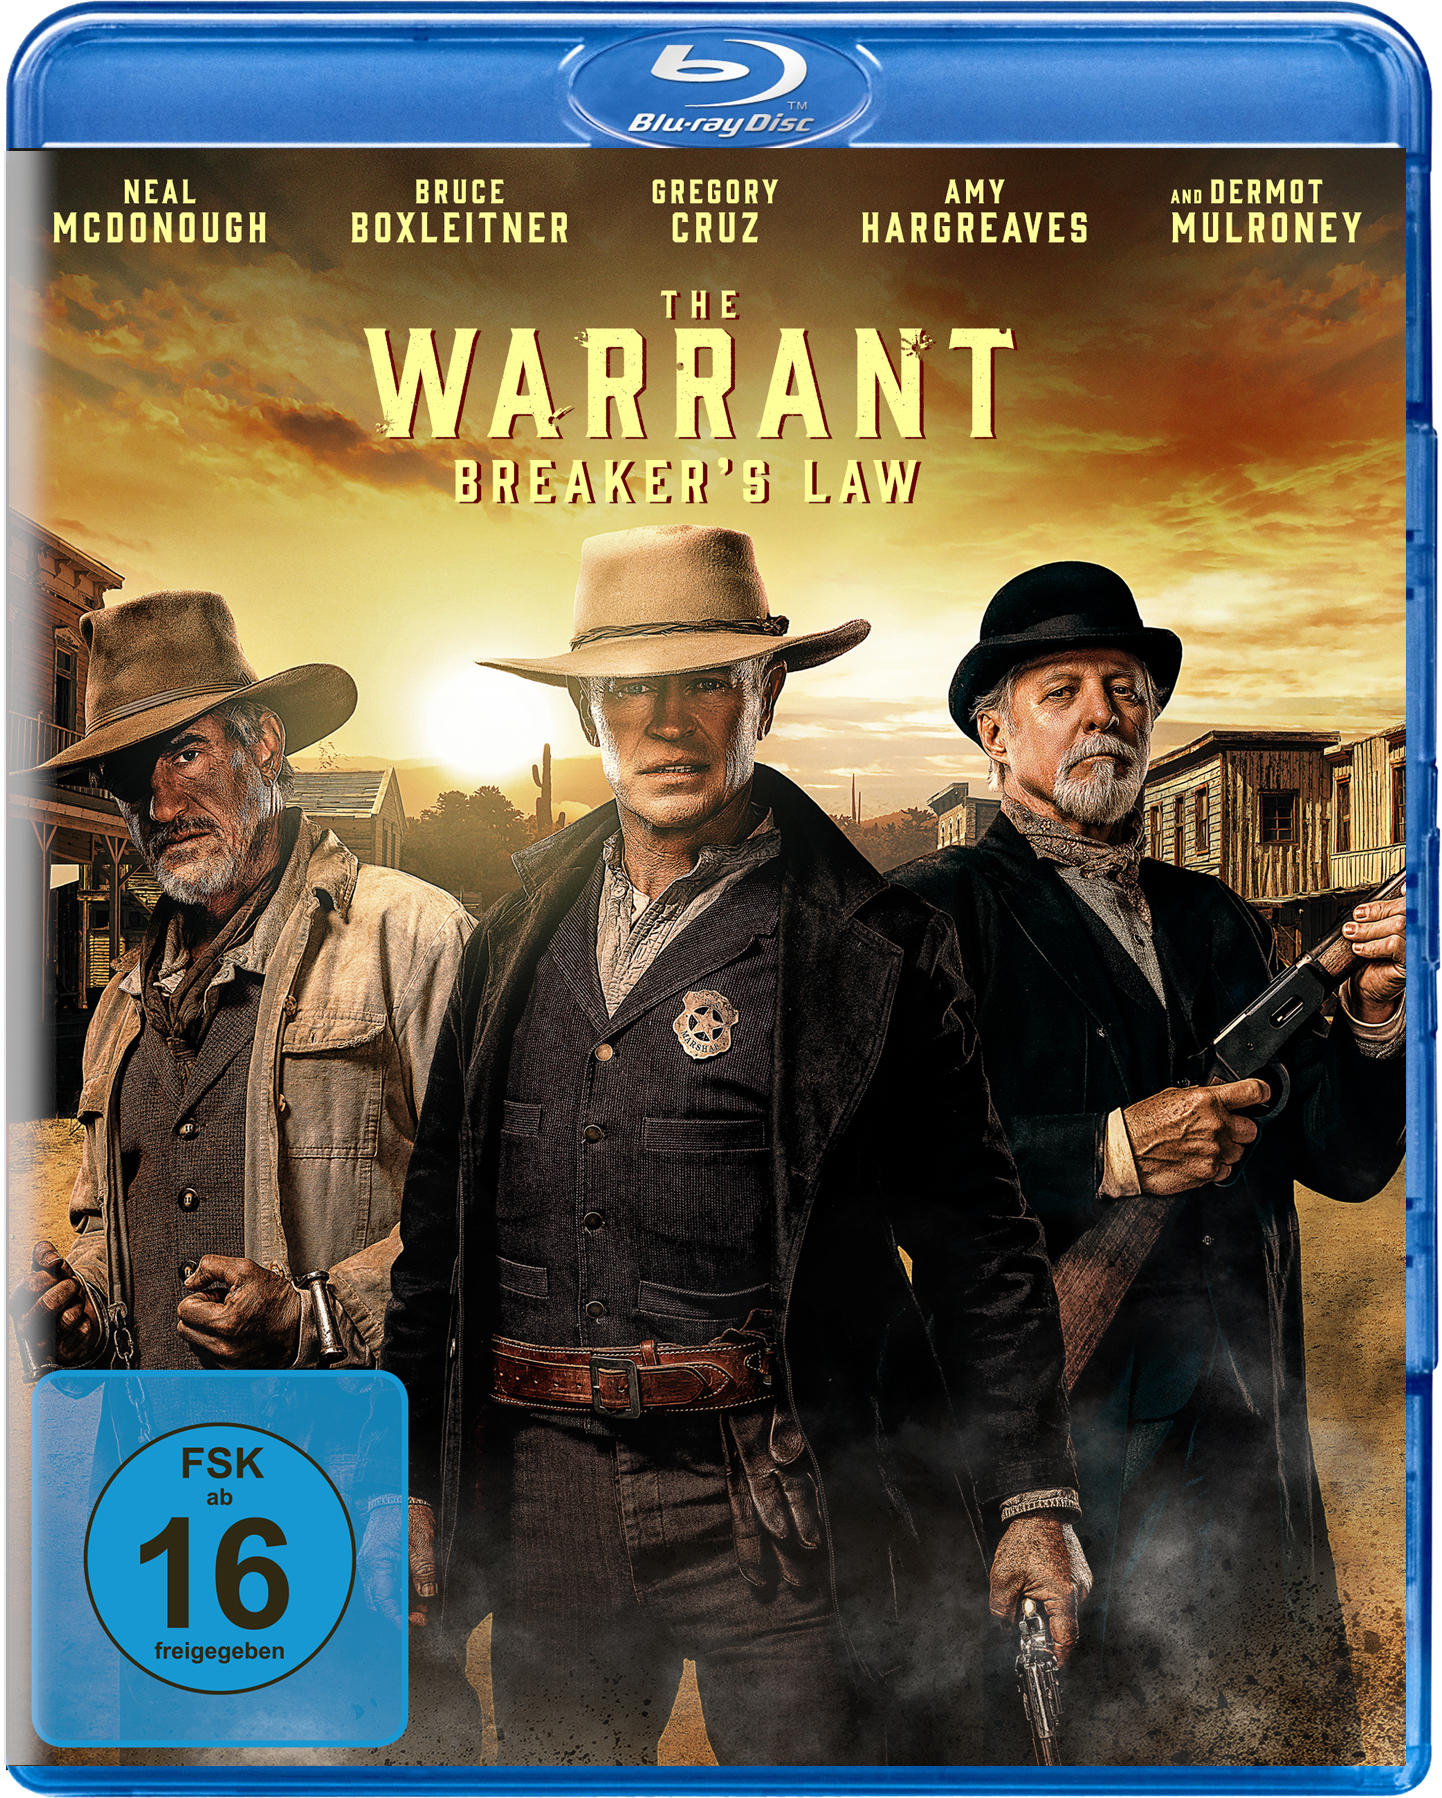 The Warrant: Blu-ray Law Breakers